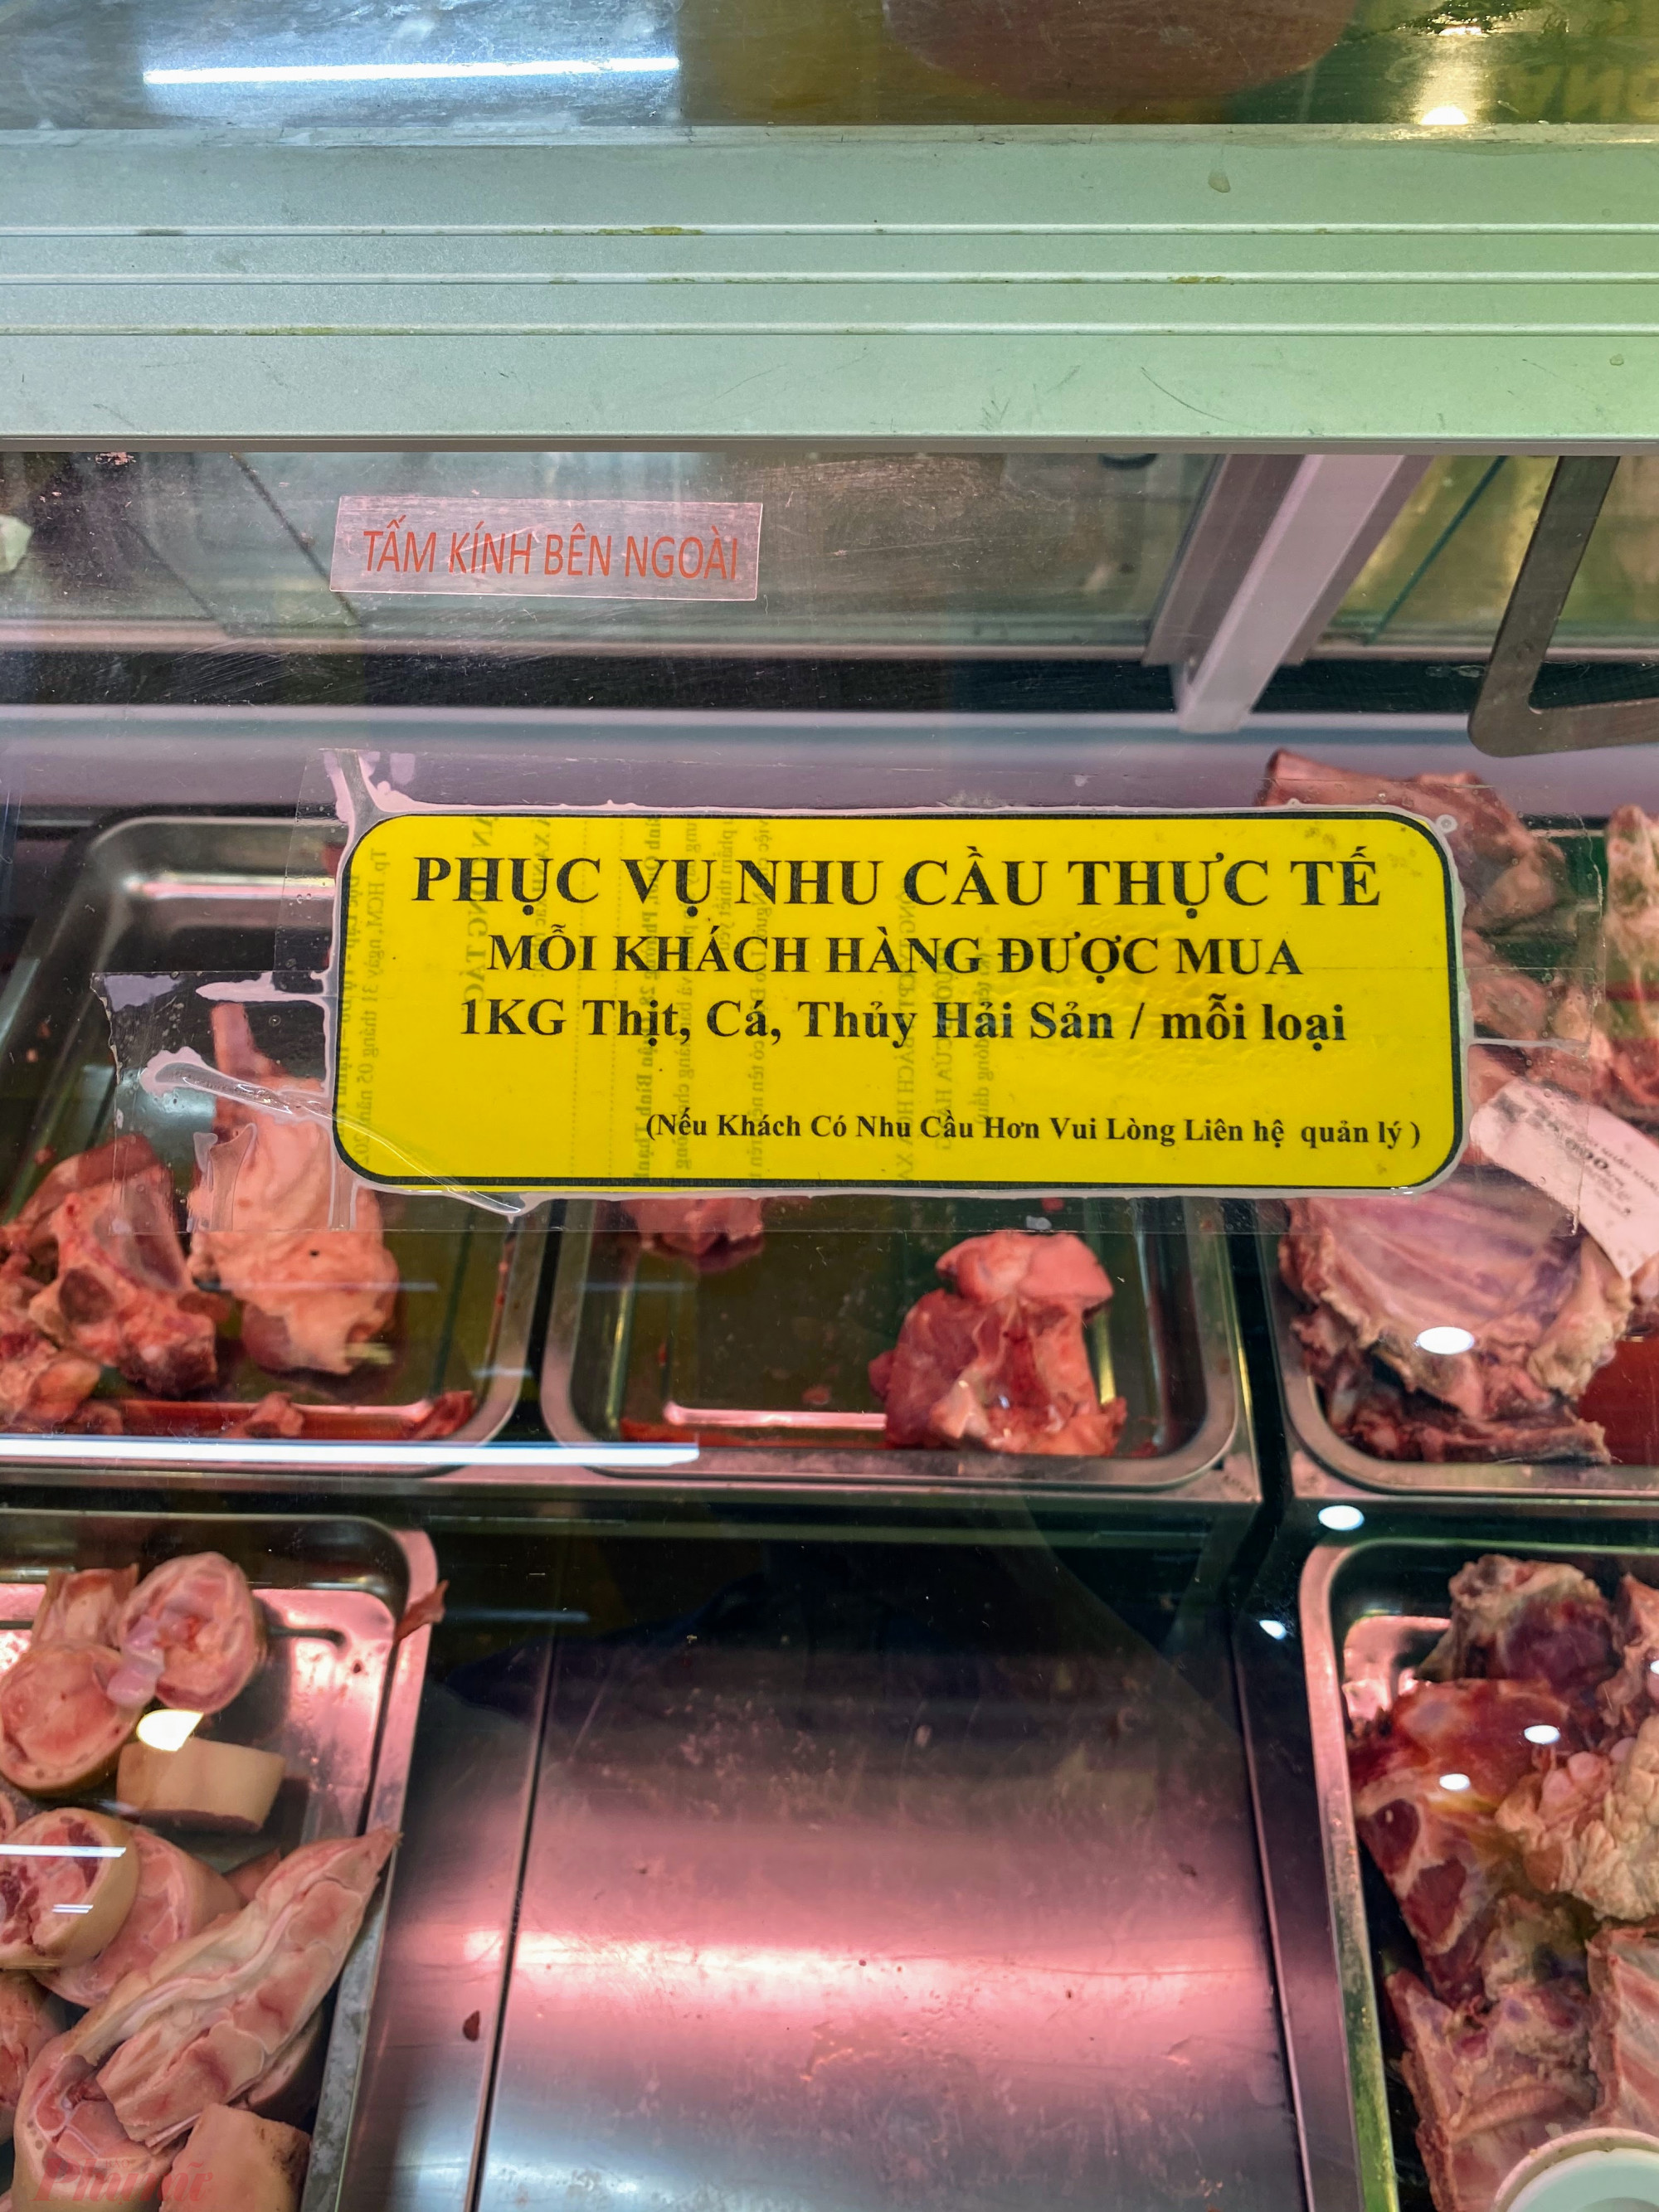 Siêu thị này cũng có dán bảng thông báo về việc mỗi khách bị giới hạn mua mỗi loại thịt chỉ 1kg để nhầm đảm bảo đủ hàng phục vụ 